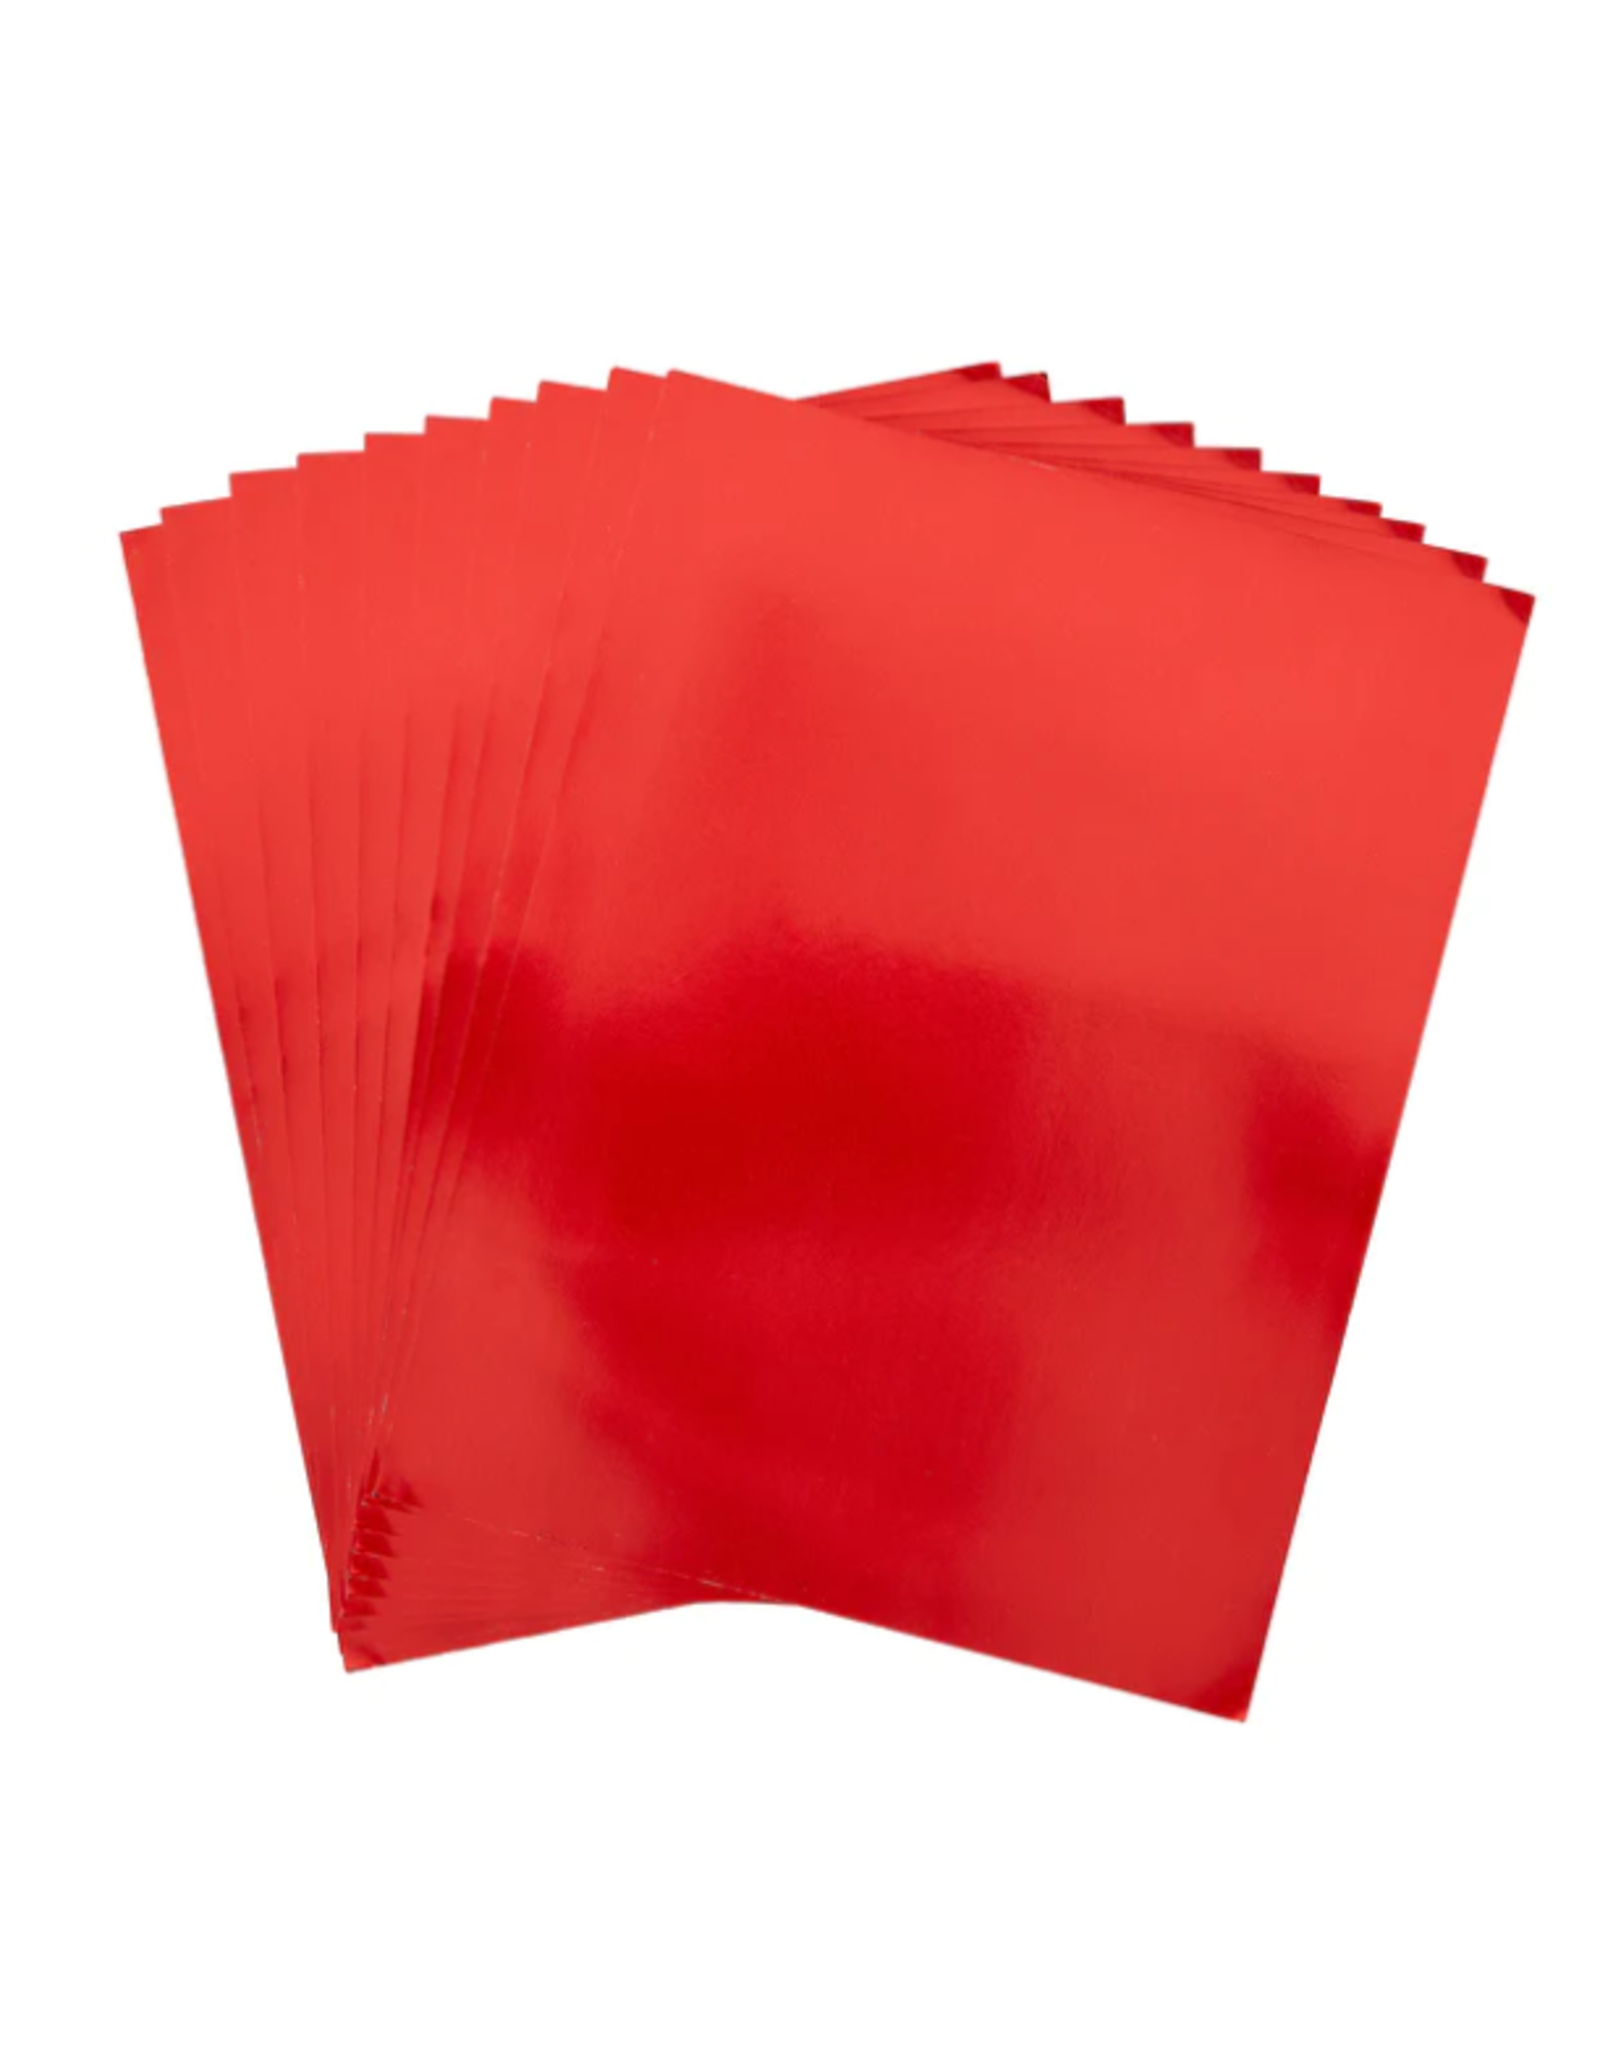 SPELLBINDERS SPELLBINDERS MIRROR RED CARDSTOCK 8.5x11 10/PK